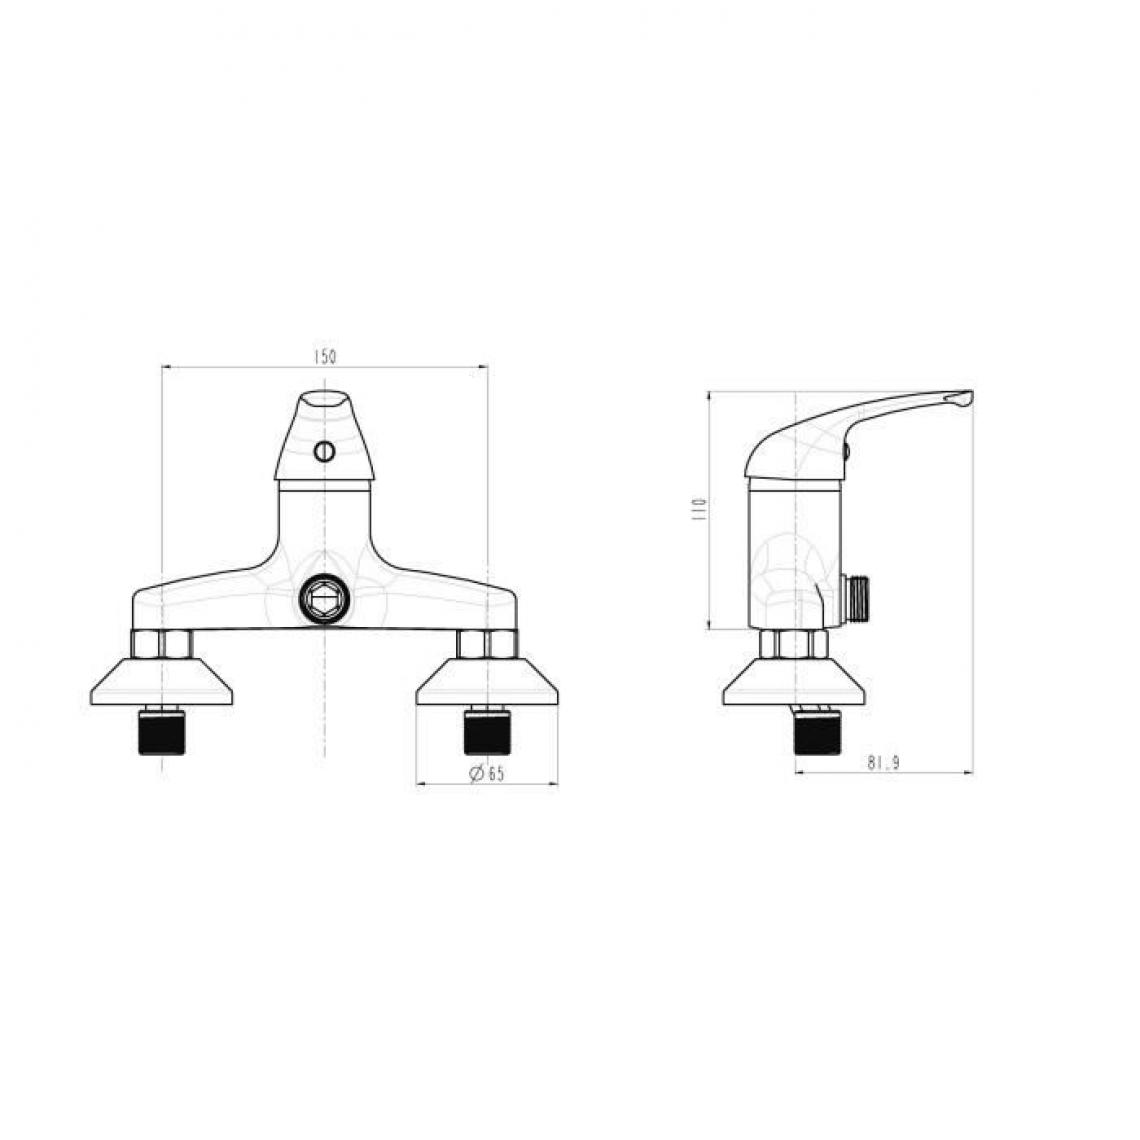 Icaverne - ROBINETTERIE DE SALLE DE BAIN Robinet mitigeur mécanique douche Athos - Robinet de lavabo